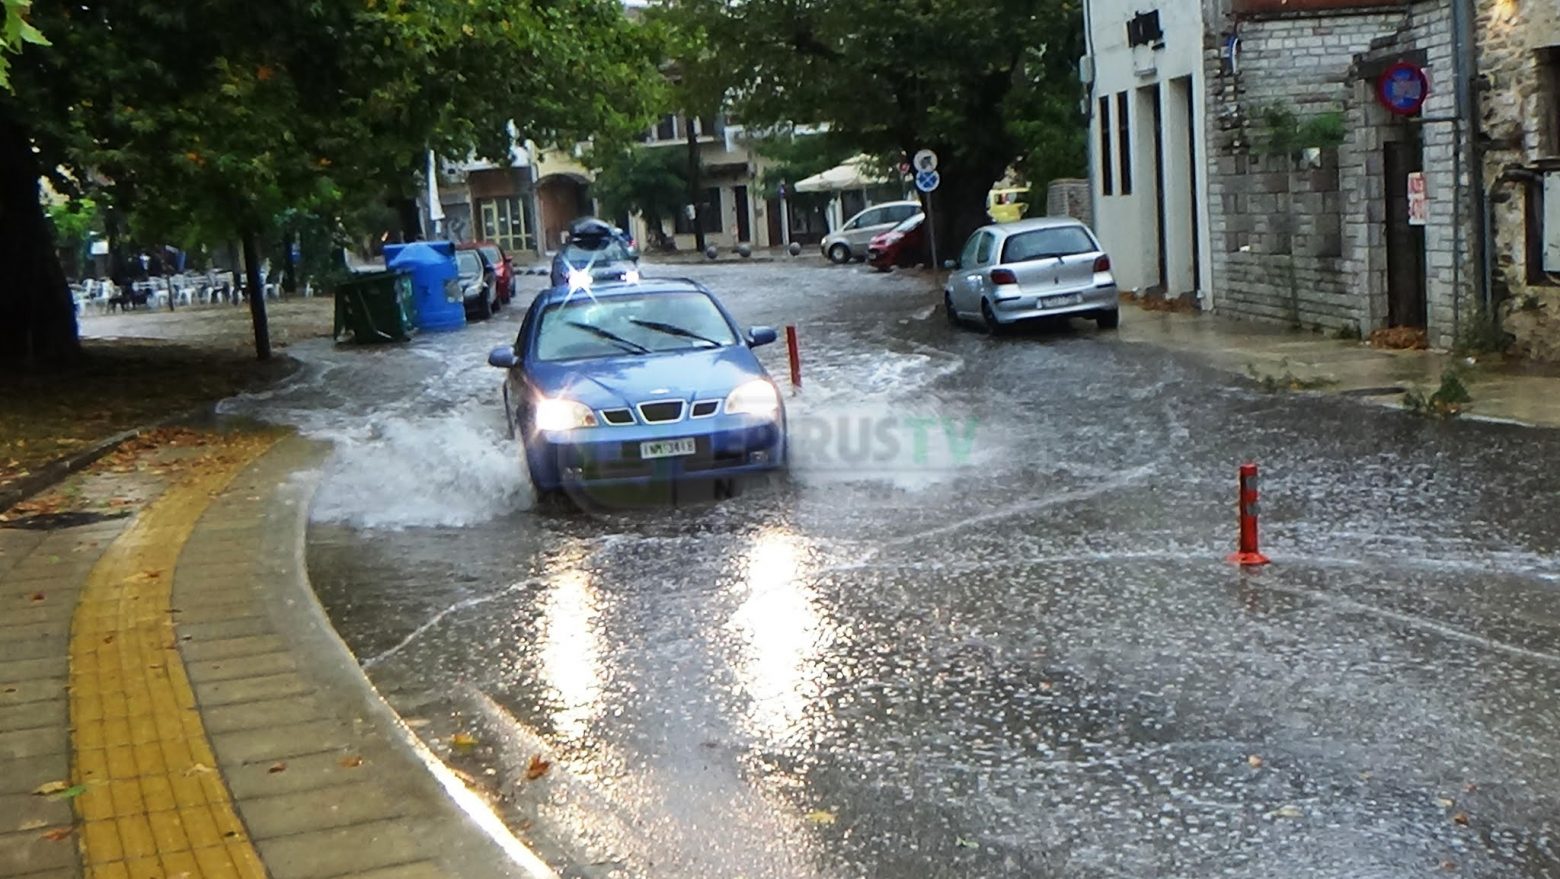 Ιωάννινα - Ισχυρή βροχόπτωση - Προβλήματα στους δρόμους και το δίκτυο της ΔΕΗ